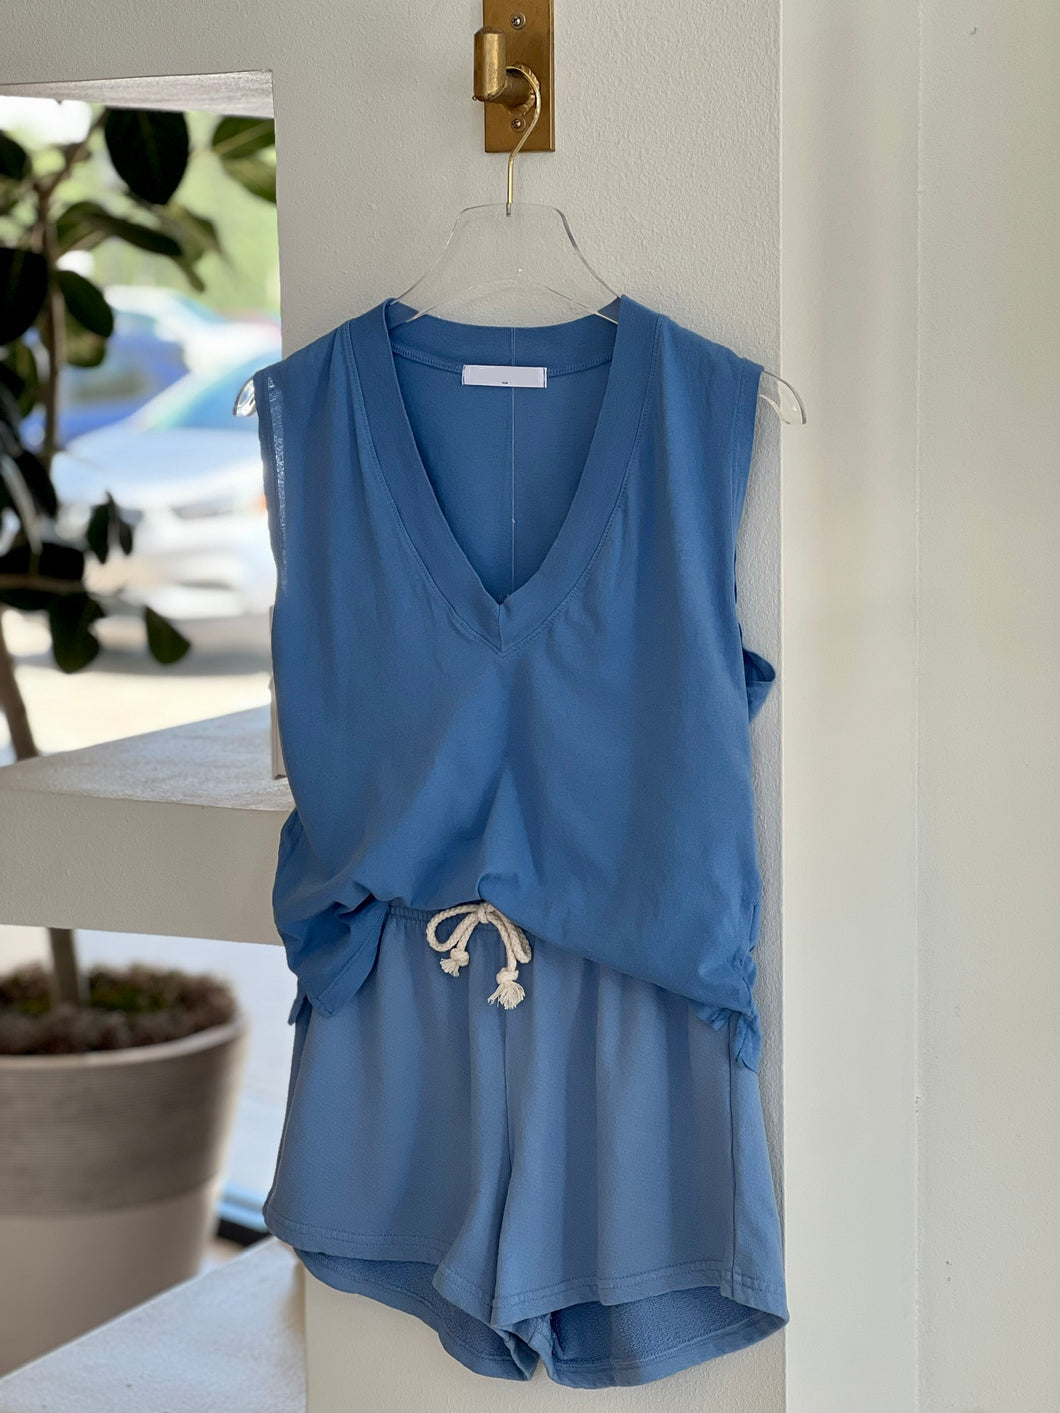 Cotton Set - Blue Sleeveless Top & Short